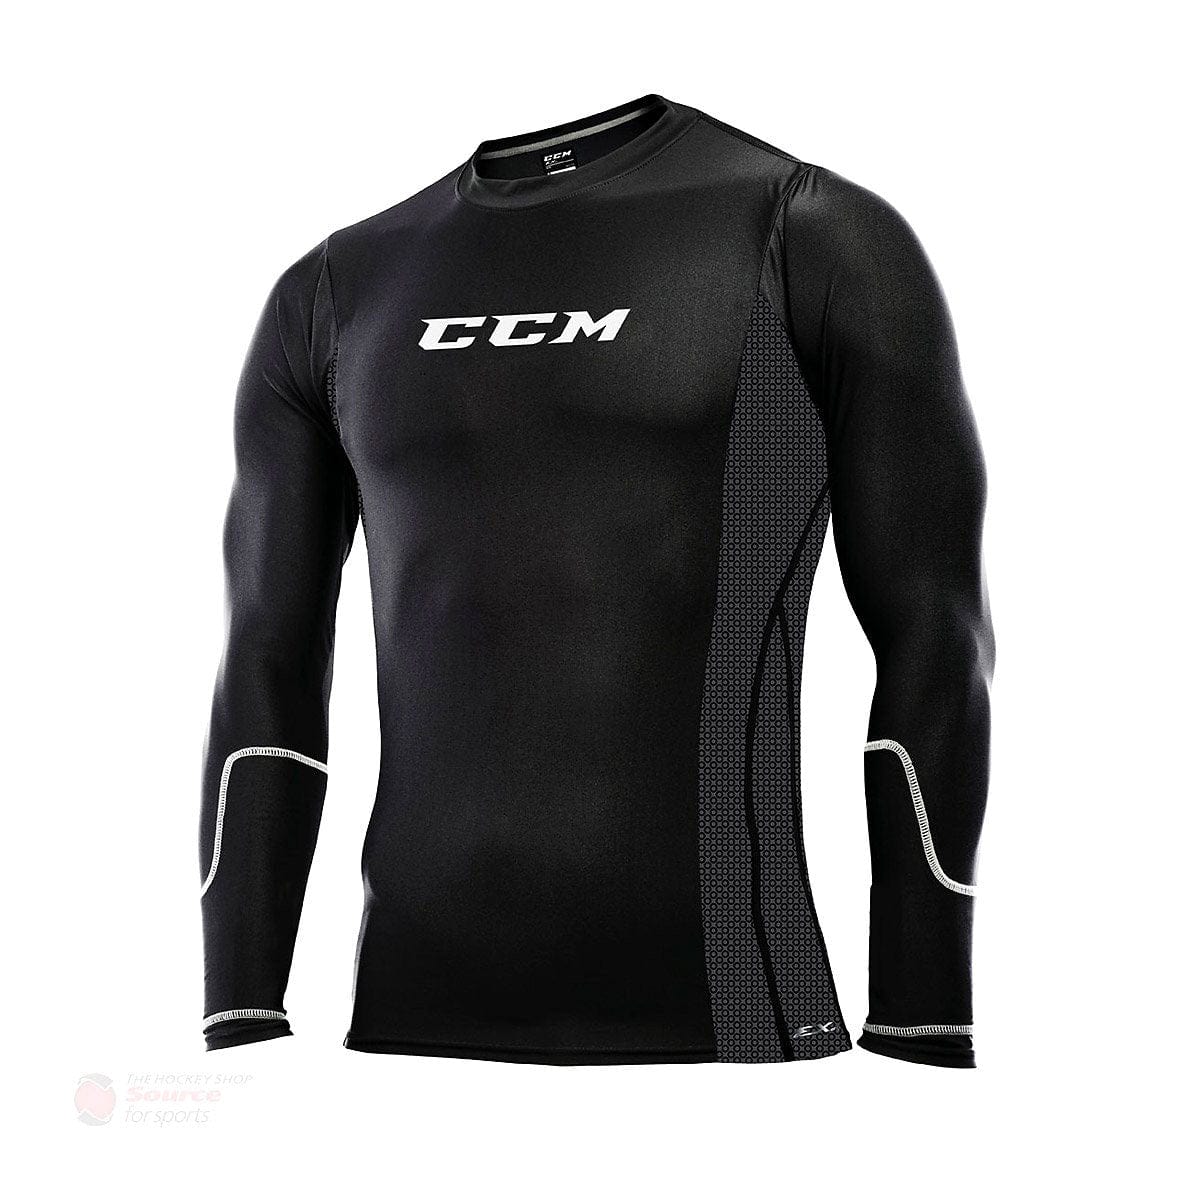 CCM Cut Resistant Pro Junior Compression Shirt